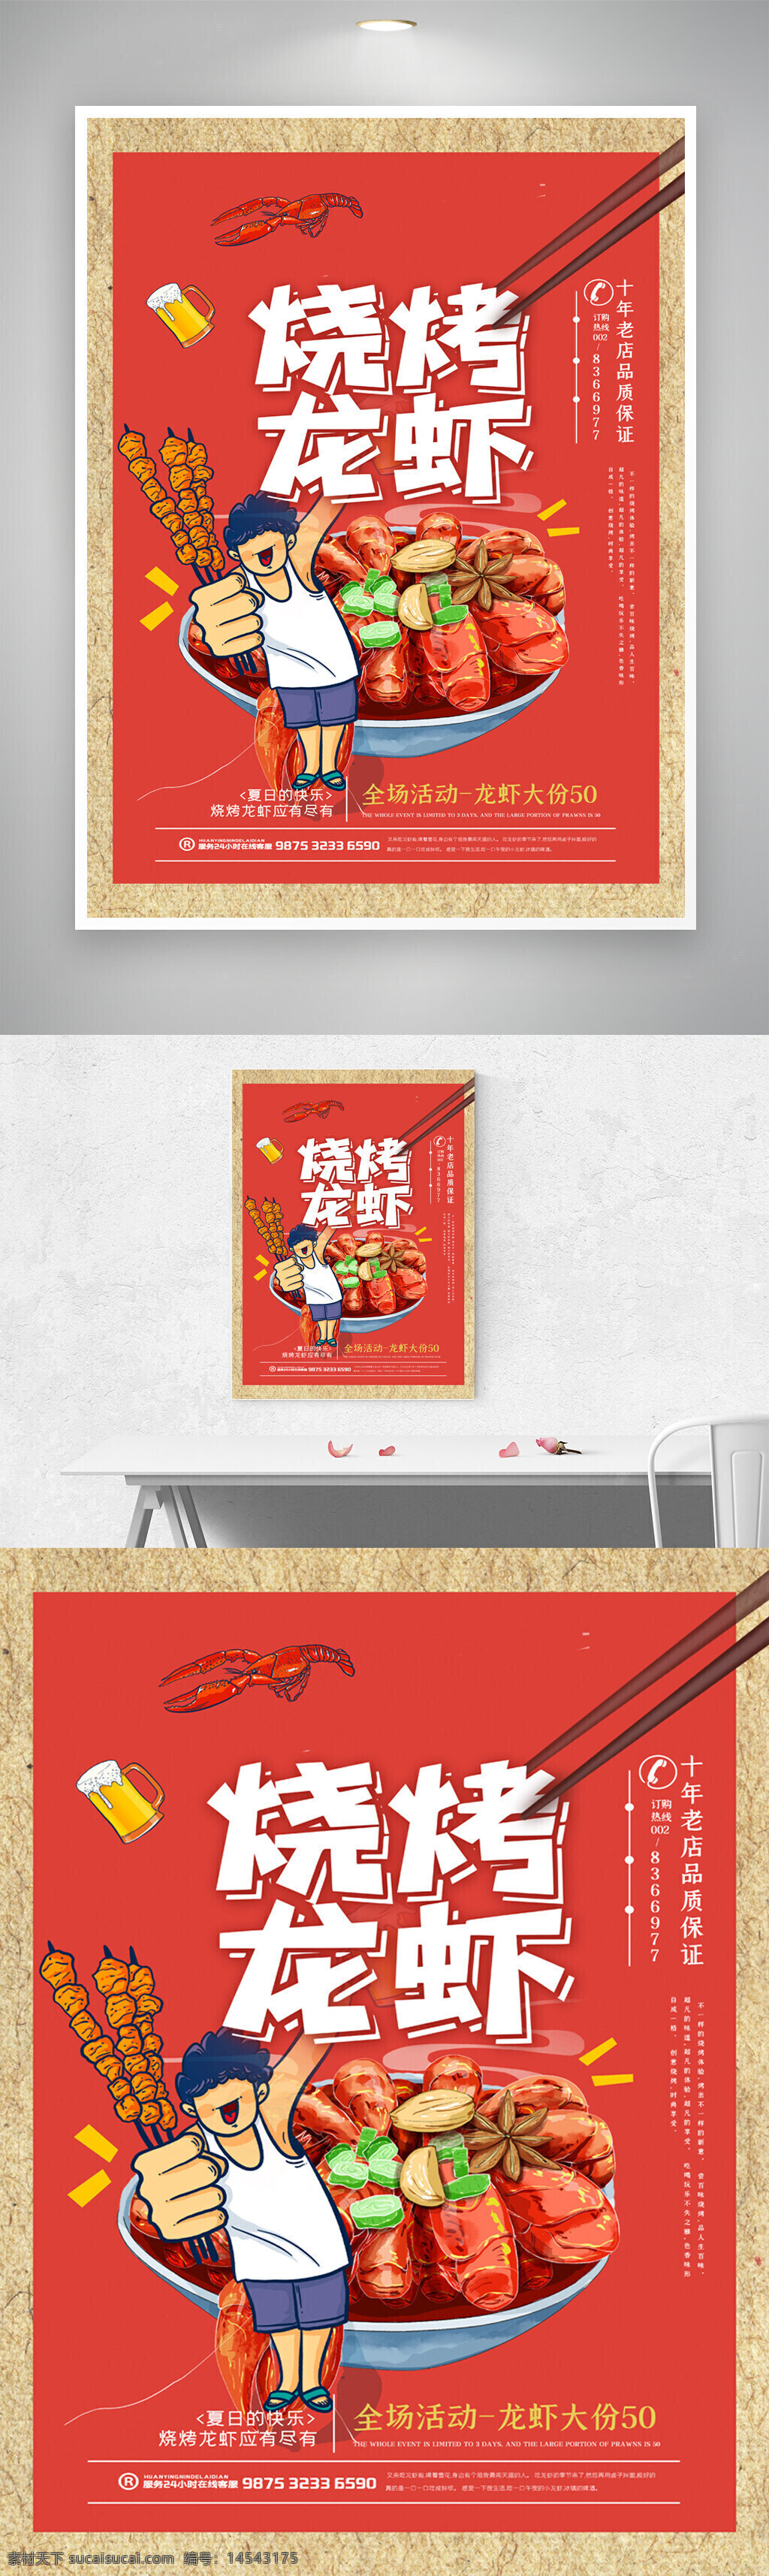 龙虾 美食 烧烤 筷子 碗 虾 串 啤酒 手绘 海报